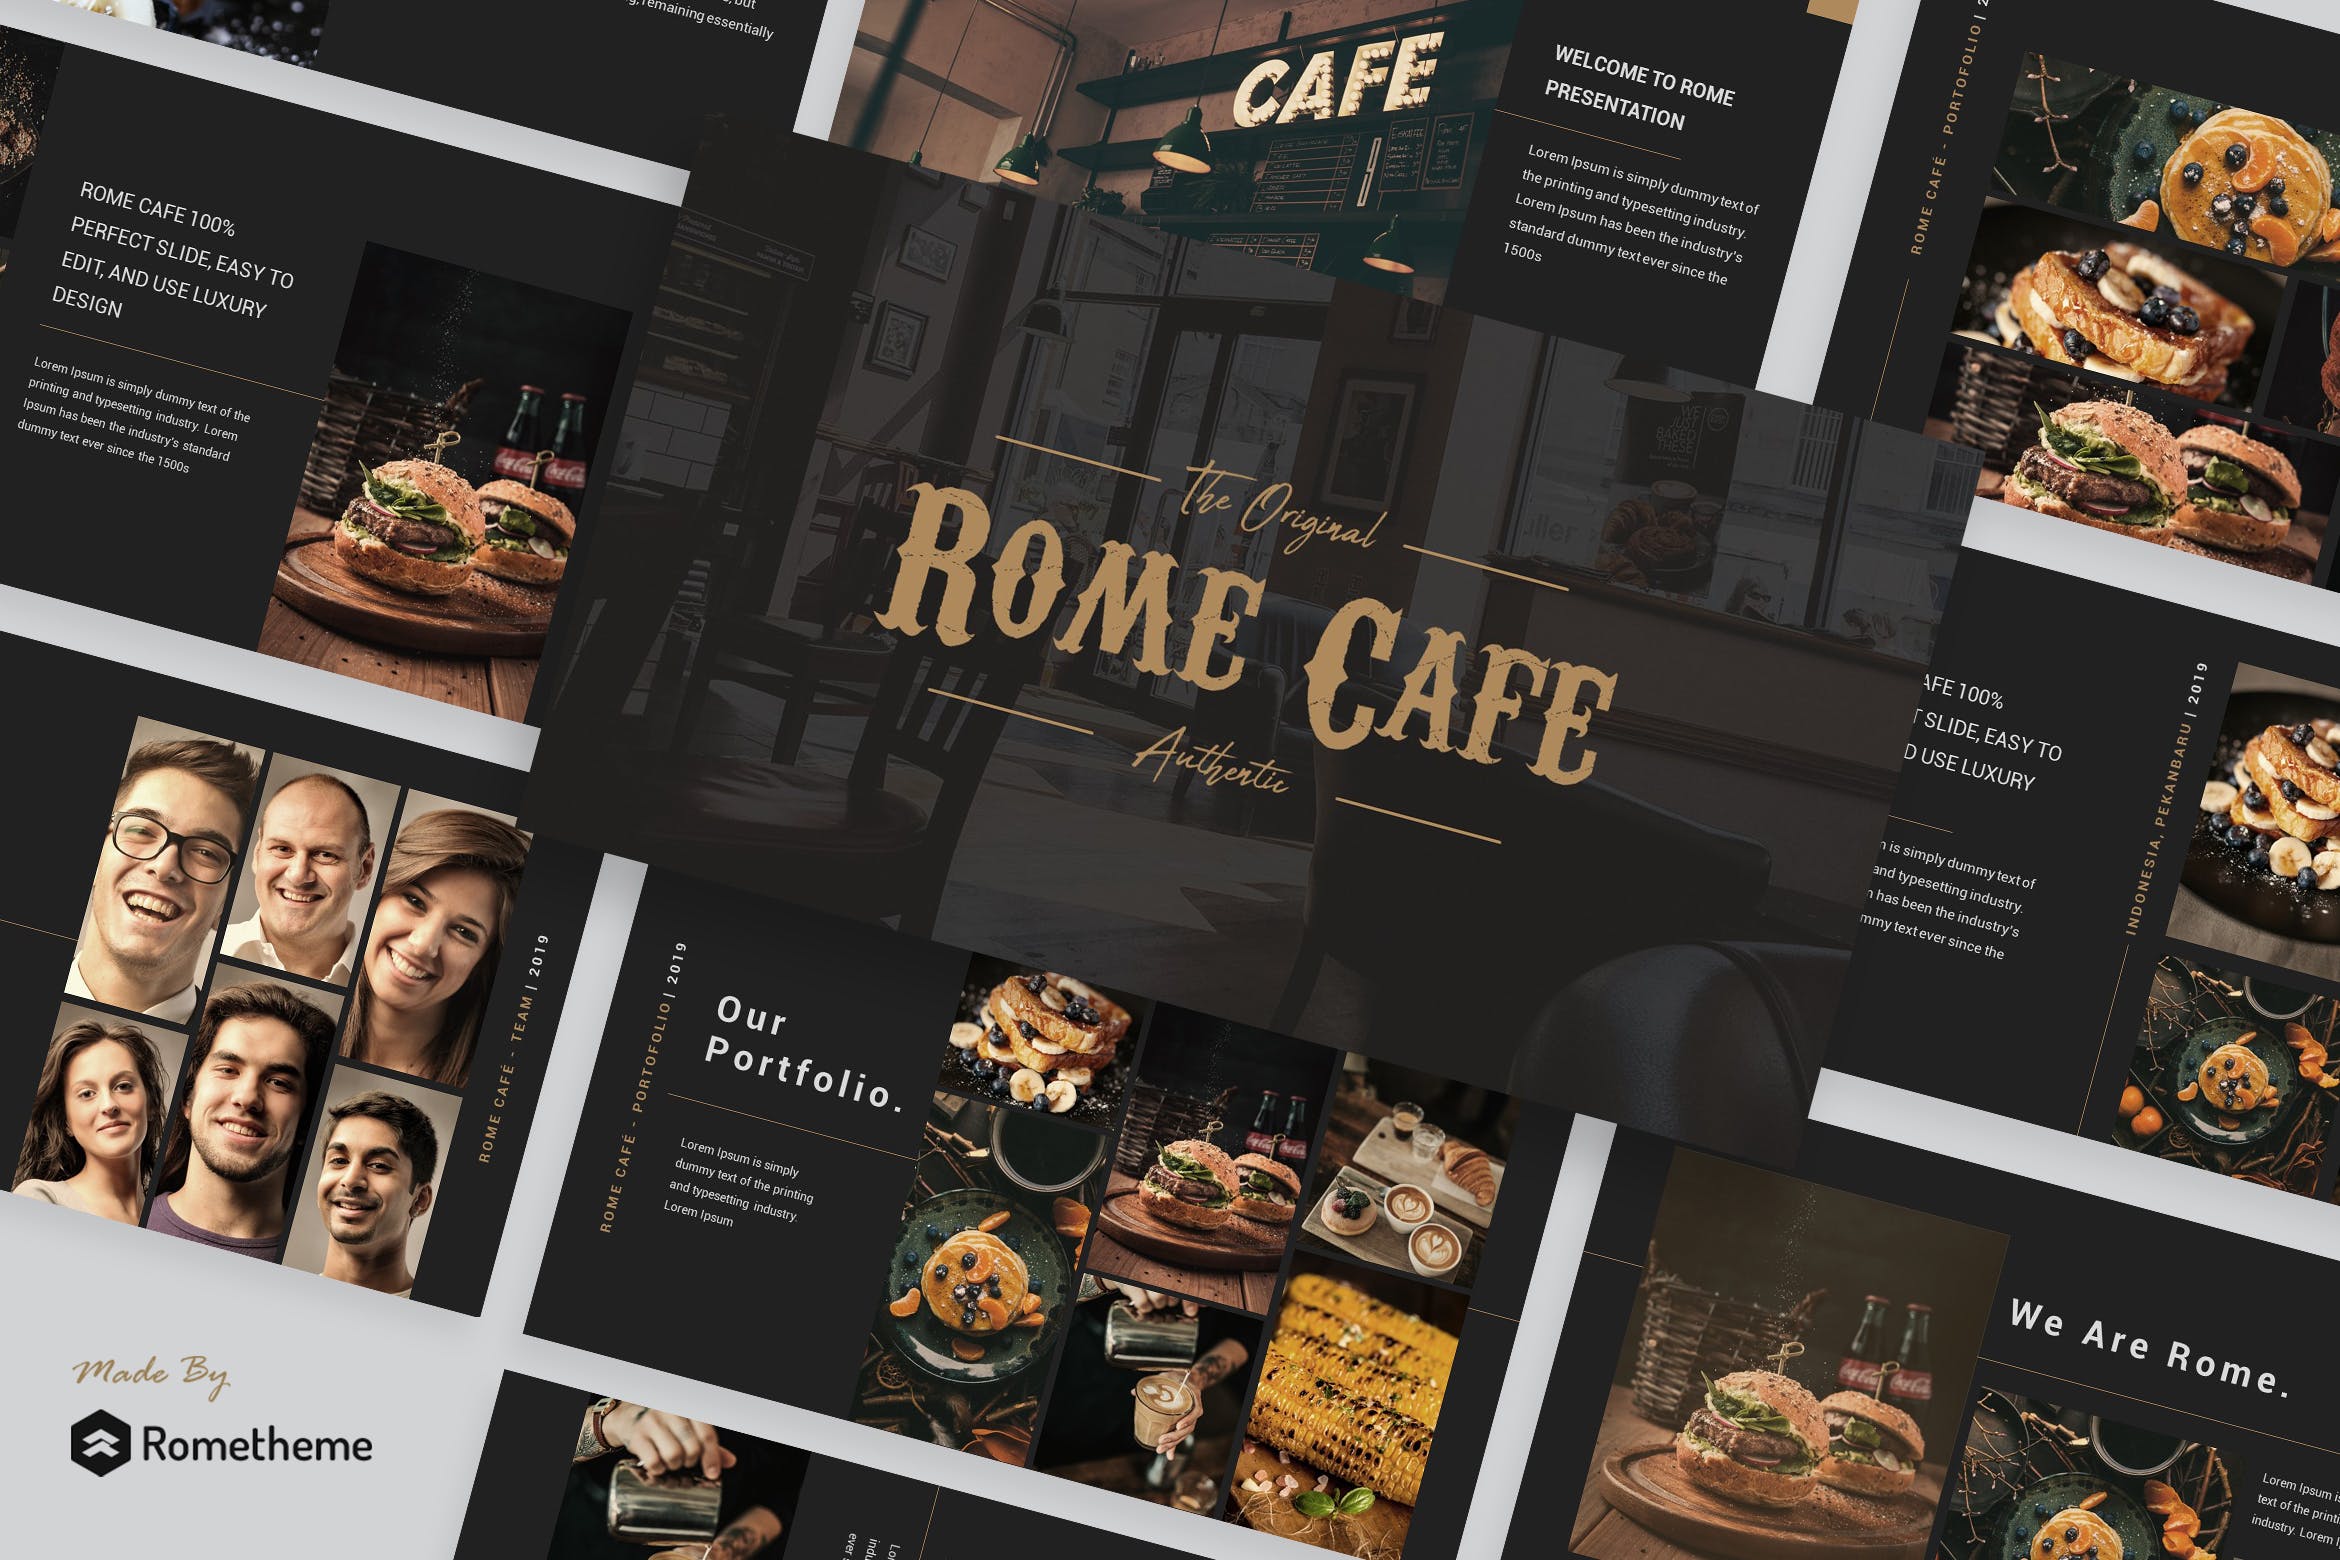 咖啡行业商业新产品宣讲PPT幻灯片模板下载Rome Cafe Presentation Template插图